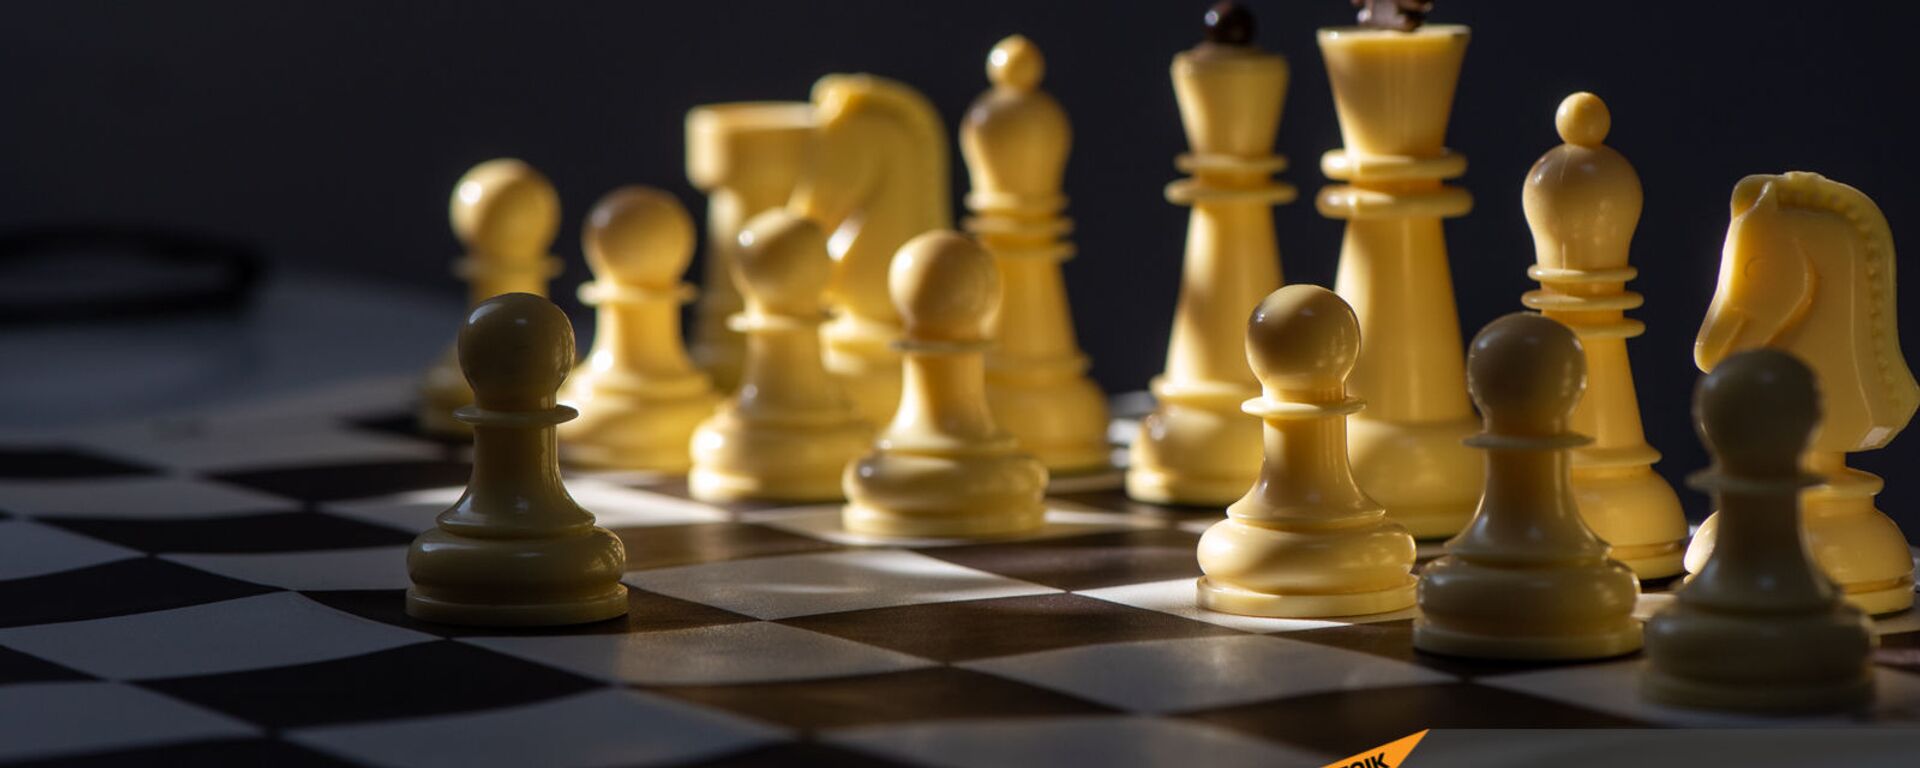 Модернизированные шахматы Джавада Ованнисяна, где каждая пешка имеет свой знак - Sputnik Արմենիա, 1920, 27.12.2021